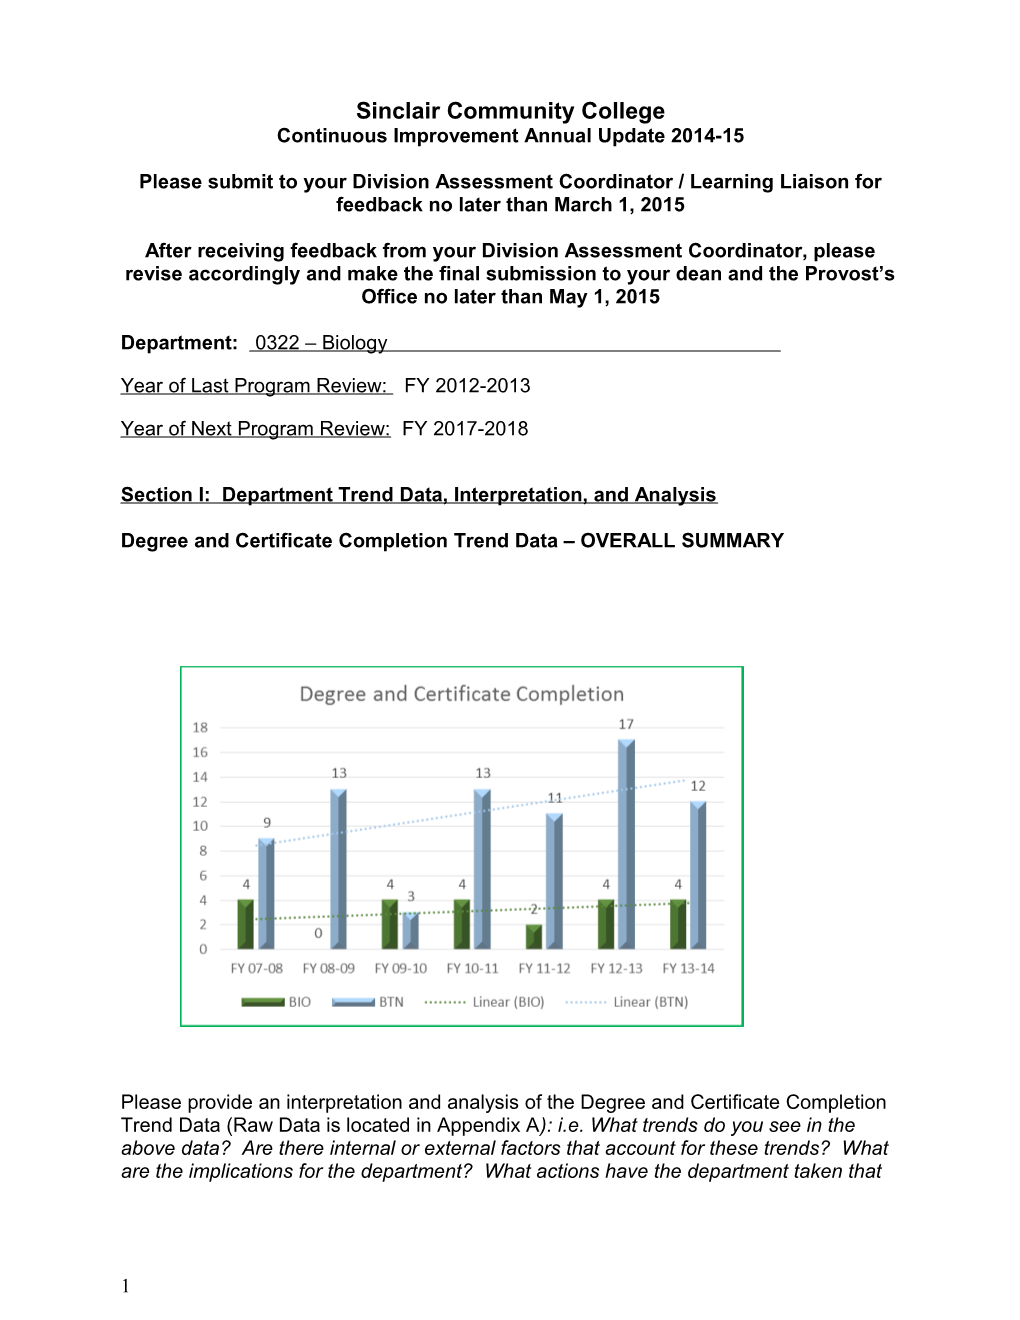 Continuous Improvement Annual Update 2014-15